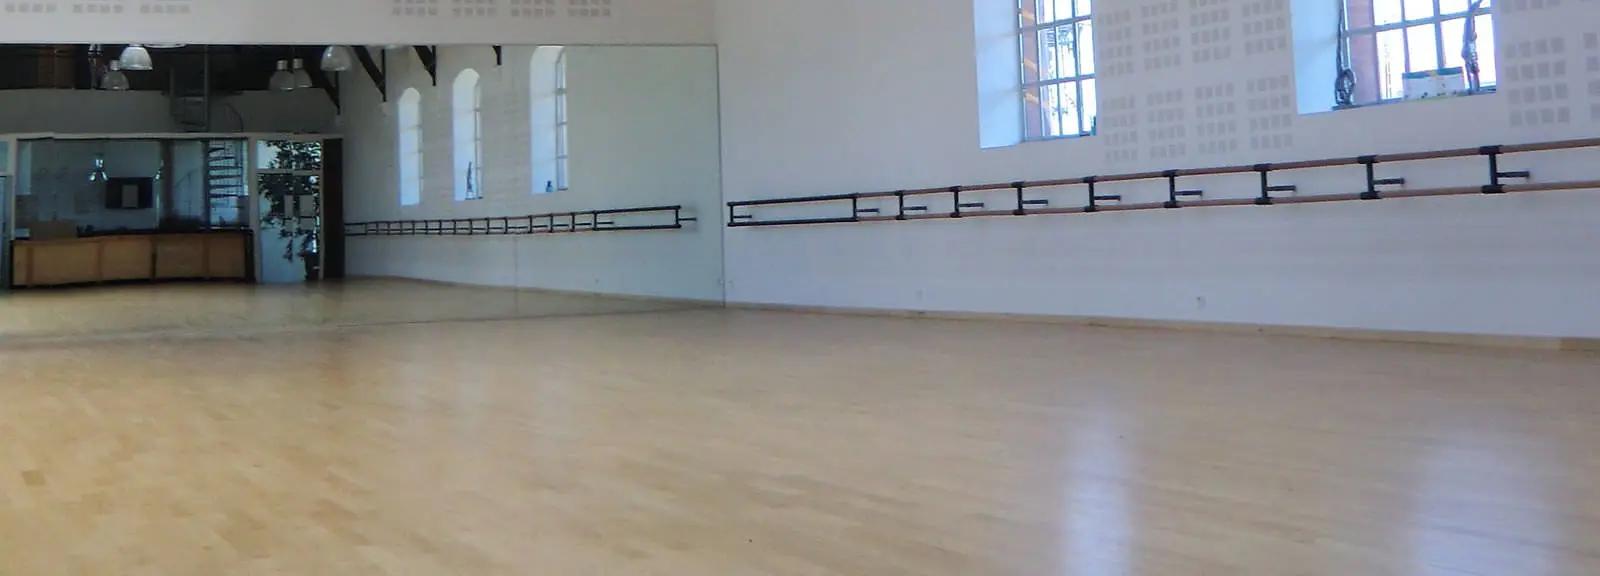 Salon dans Studio de danse lumineux & atypique idéal tournage - 1